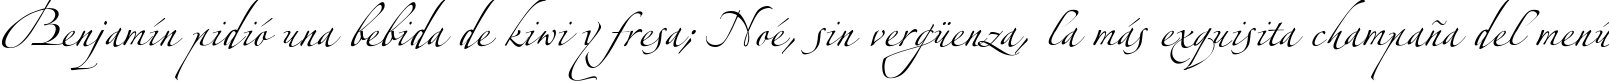 Пример написания шрифтом Zeferino One текста на испанском